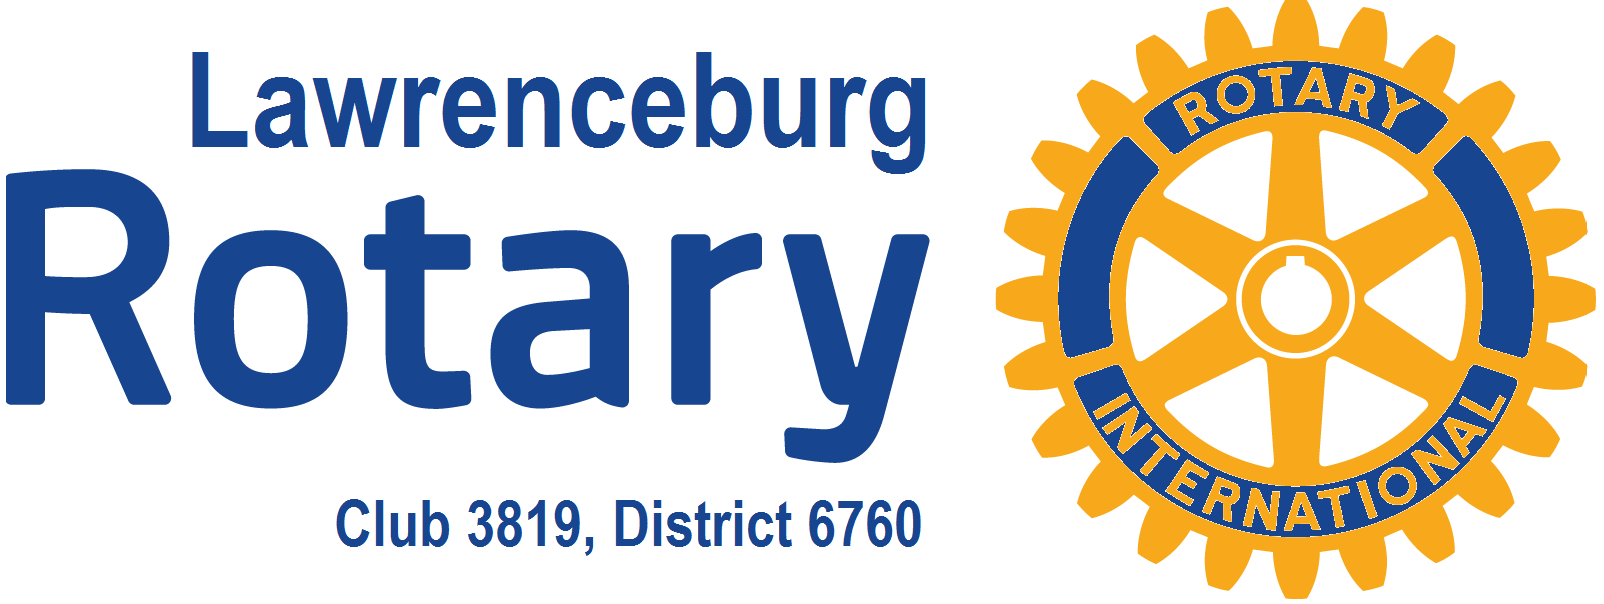 Rotary Logo - LawrenceburgTN Rotary - About Rotary - New Rotary Logo